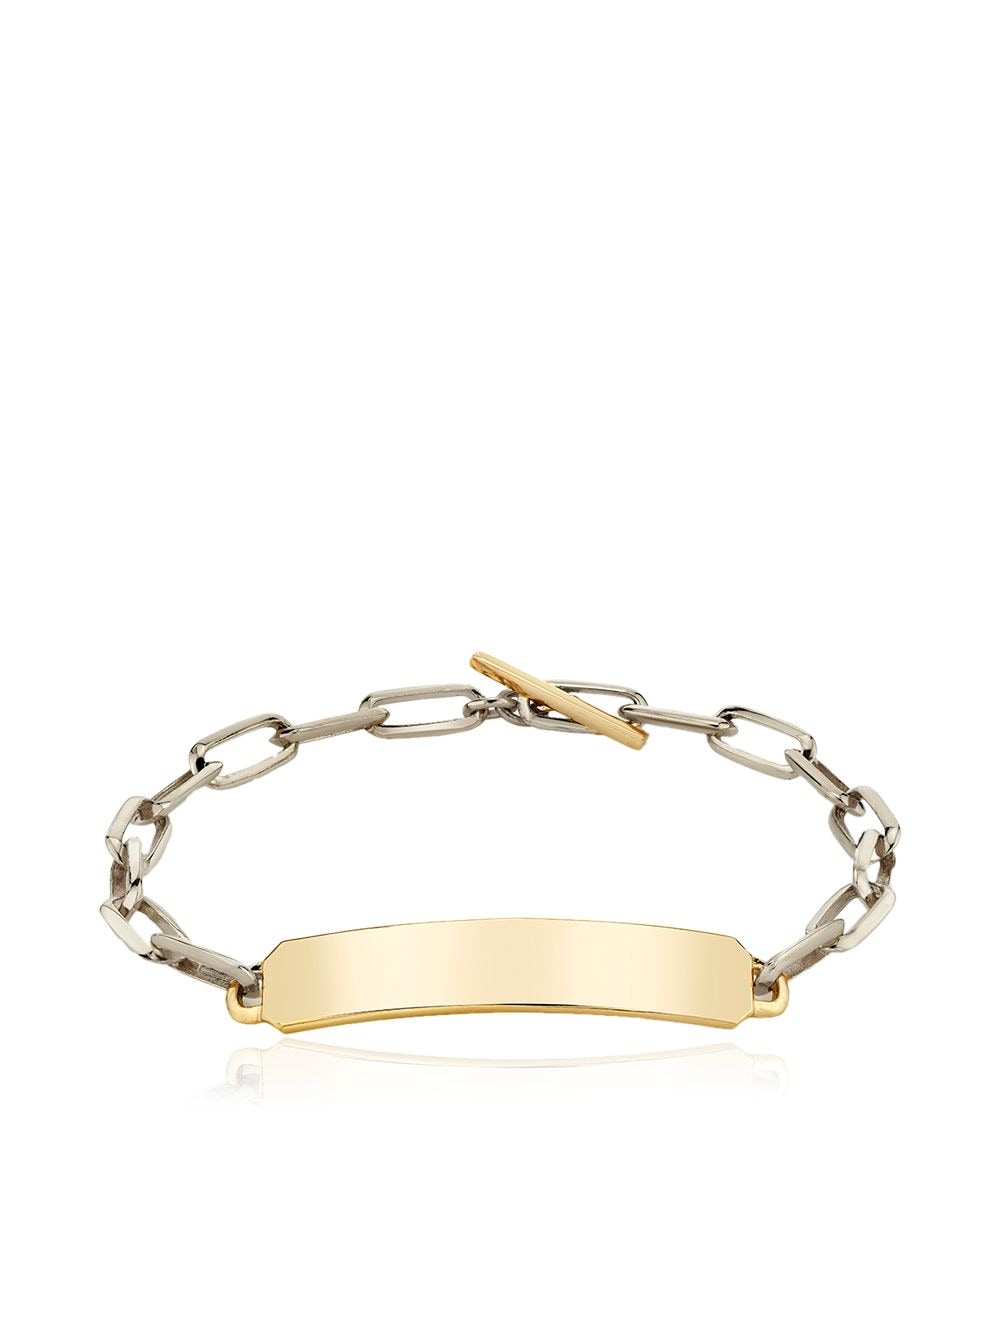 Lizzie Mandler Fine Jewelry OG ID chain bracelet